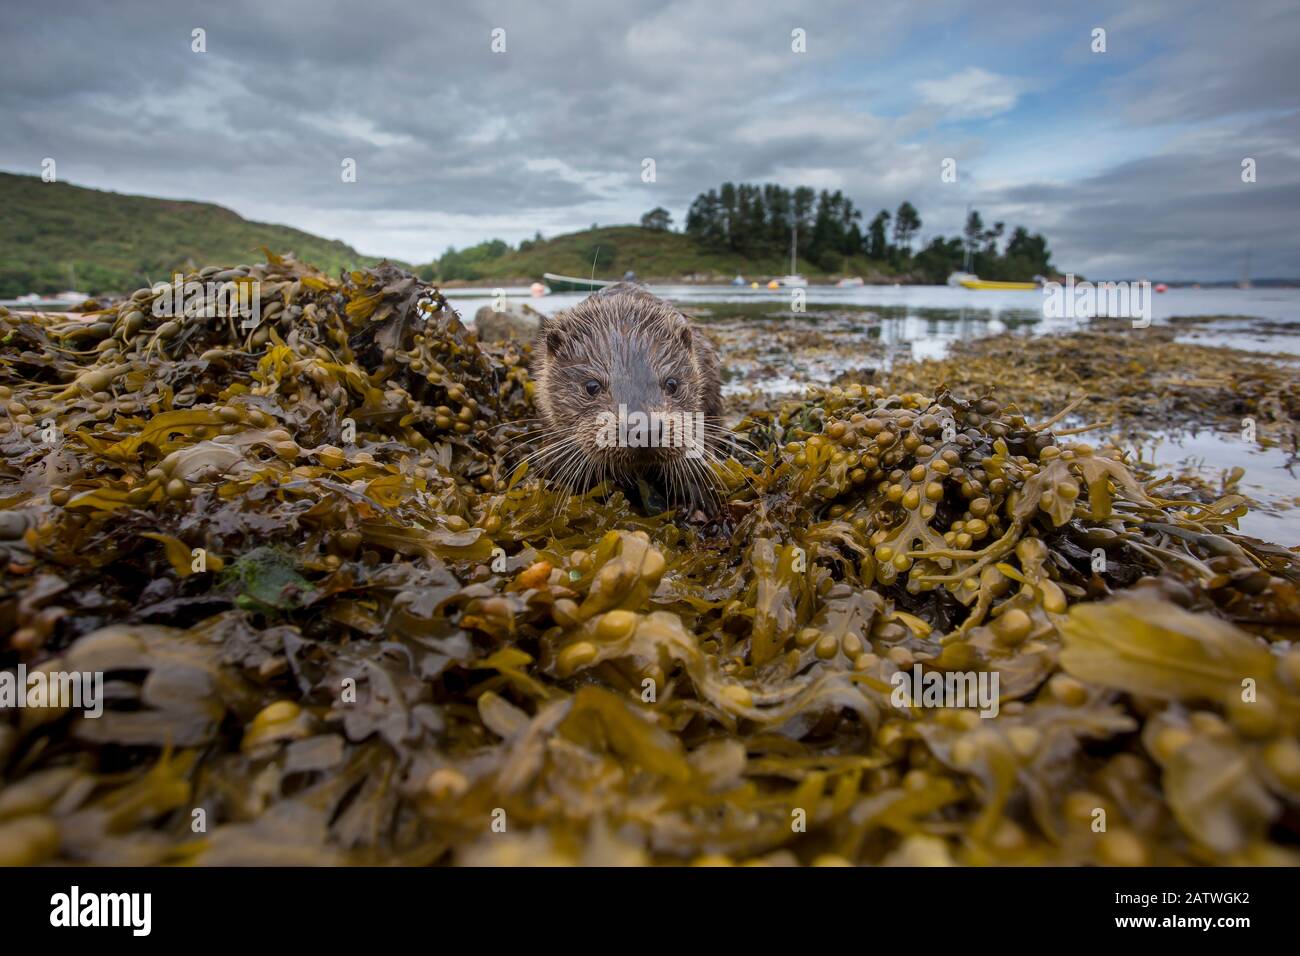 Otter (Lutra lutra) ritratto a terra con barche in background. Argyll, Scozia, Regno Unito, Agosto. Foto Stock